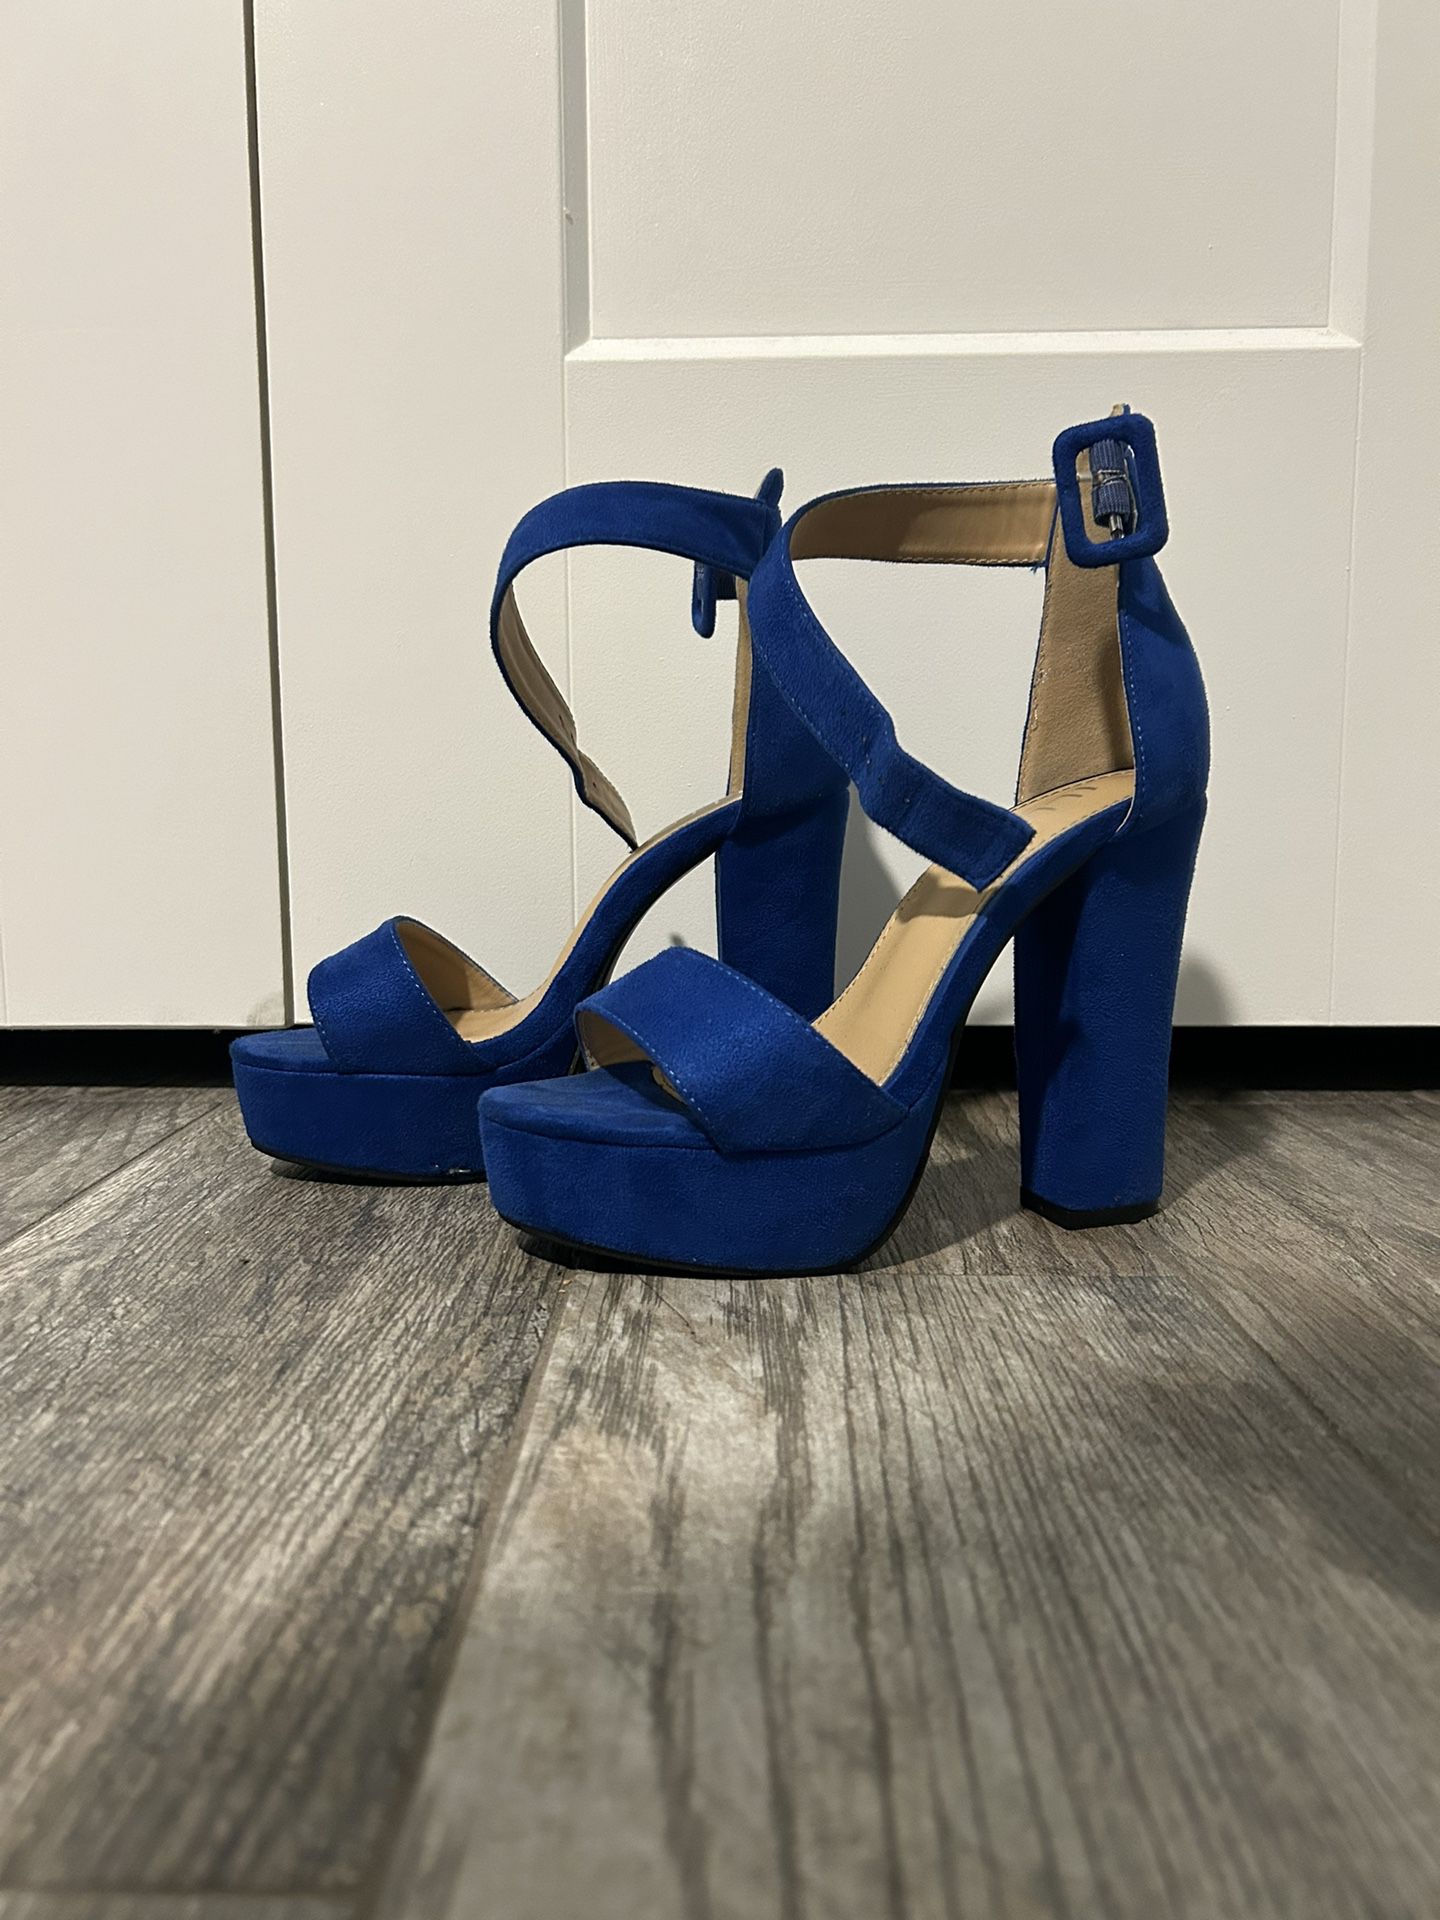 Royal blue 5in heels 